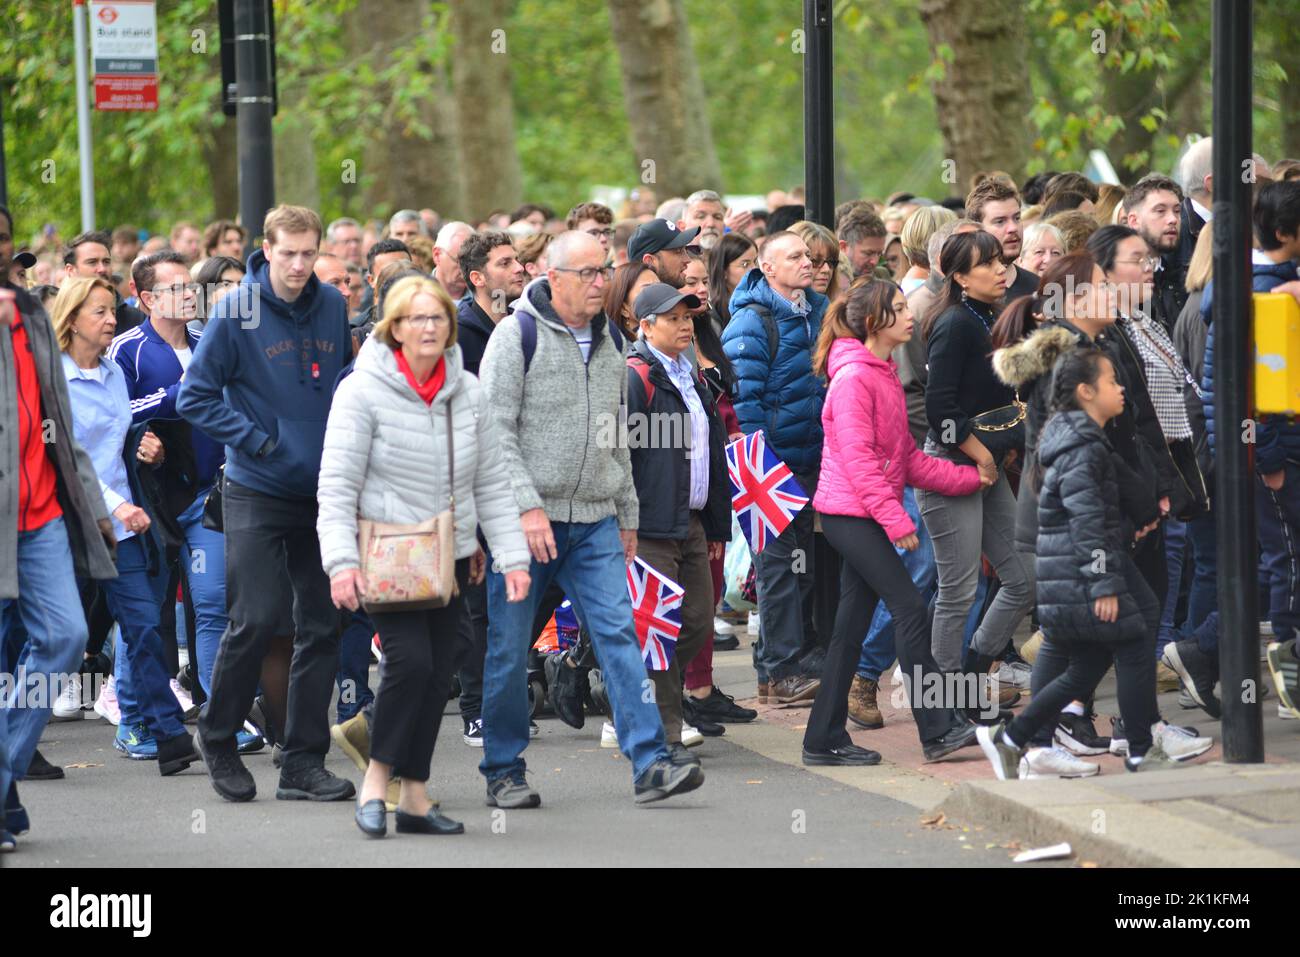 Staatsbegräbnis Ihrer Majestät Königin Elizabeth II., London, Großbritannien, Montag, 19.. September 2022. Menschenmassen strömen von der Park Lane in den Hyde Park, um die öffentliche Vorführung auf großen Leinwänden zu sehen. Stockfoto